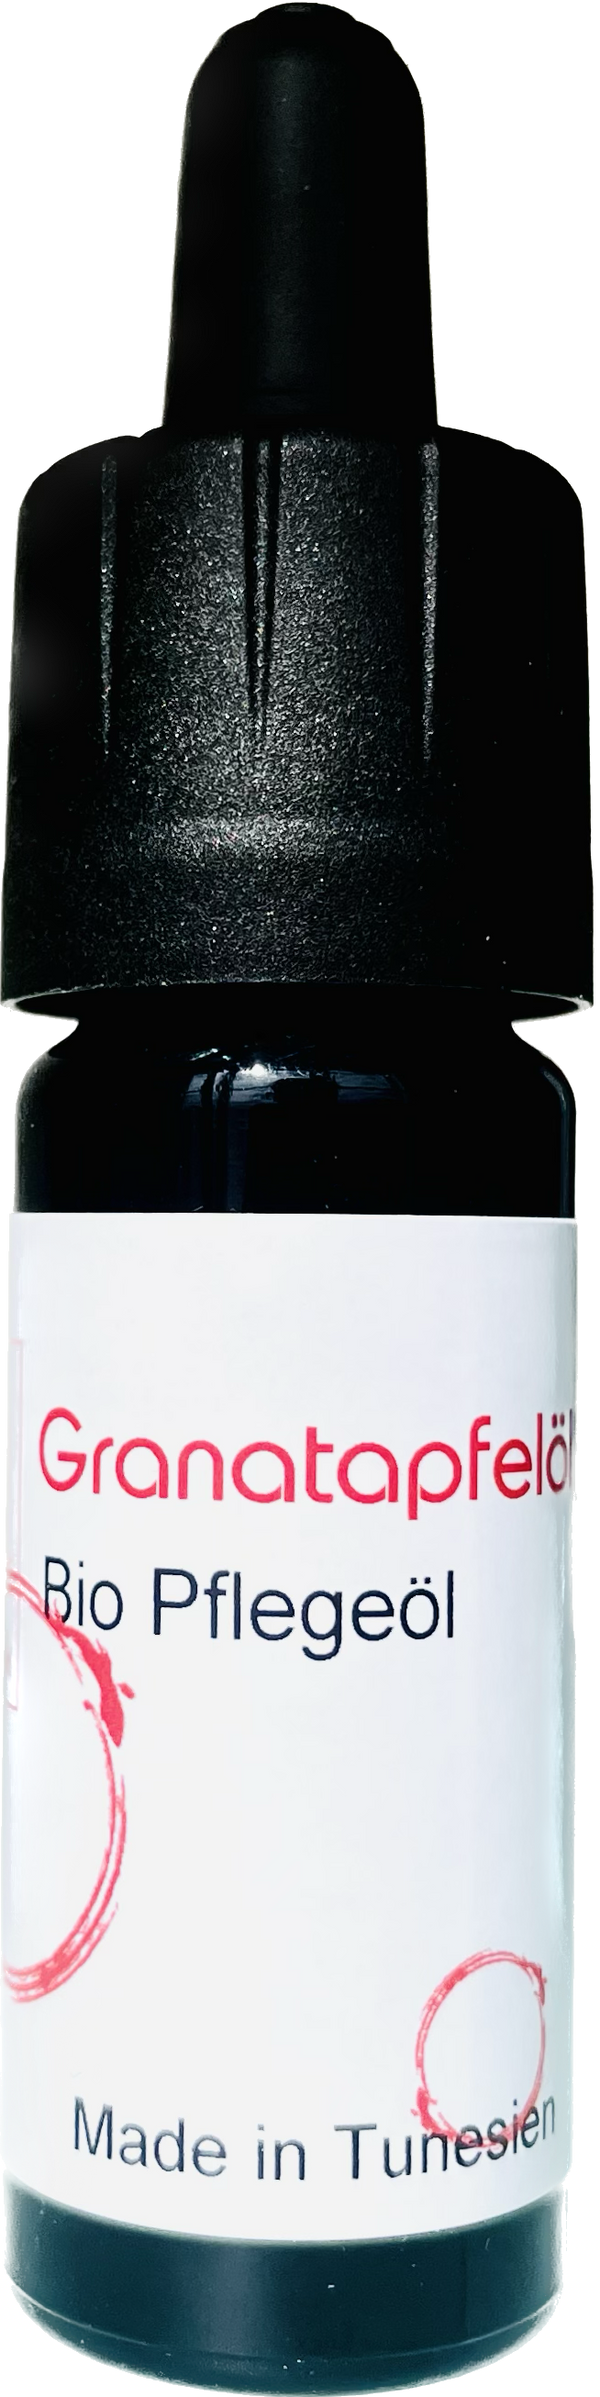 Granatapfelsamenoel Bio